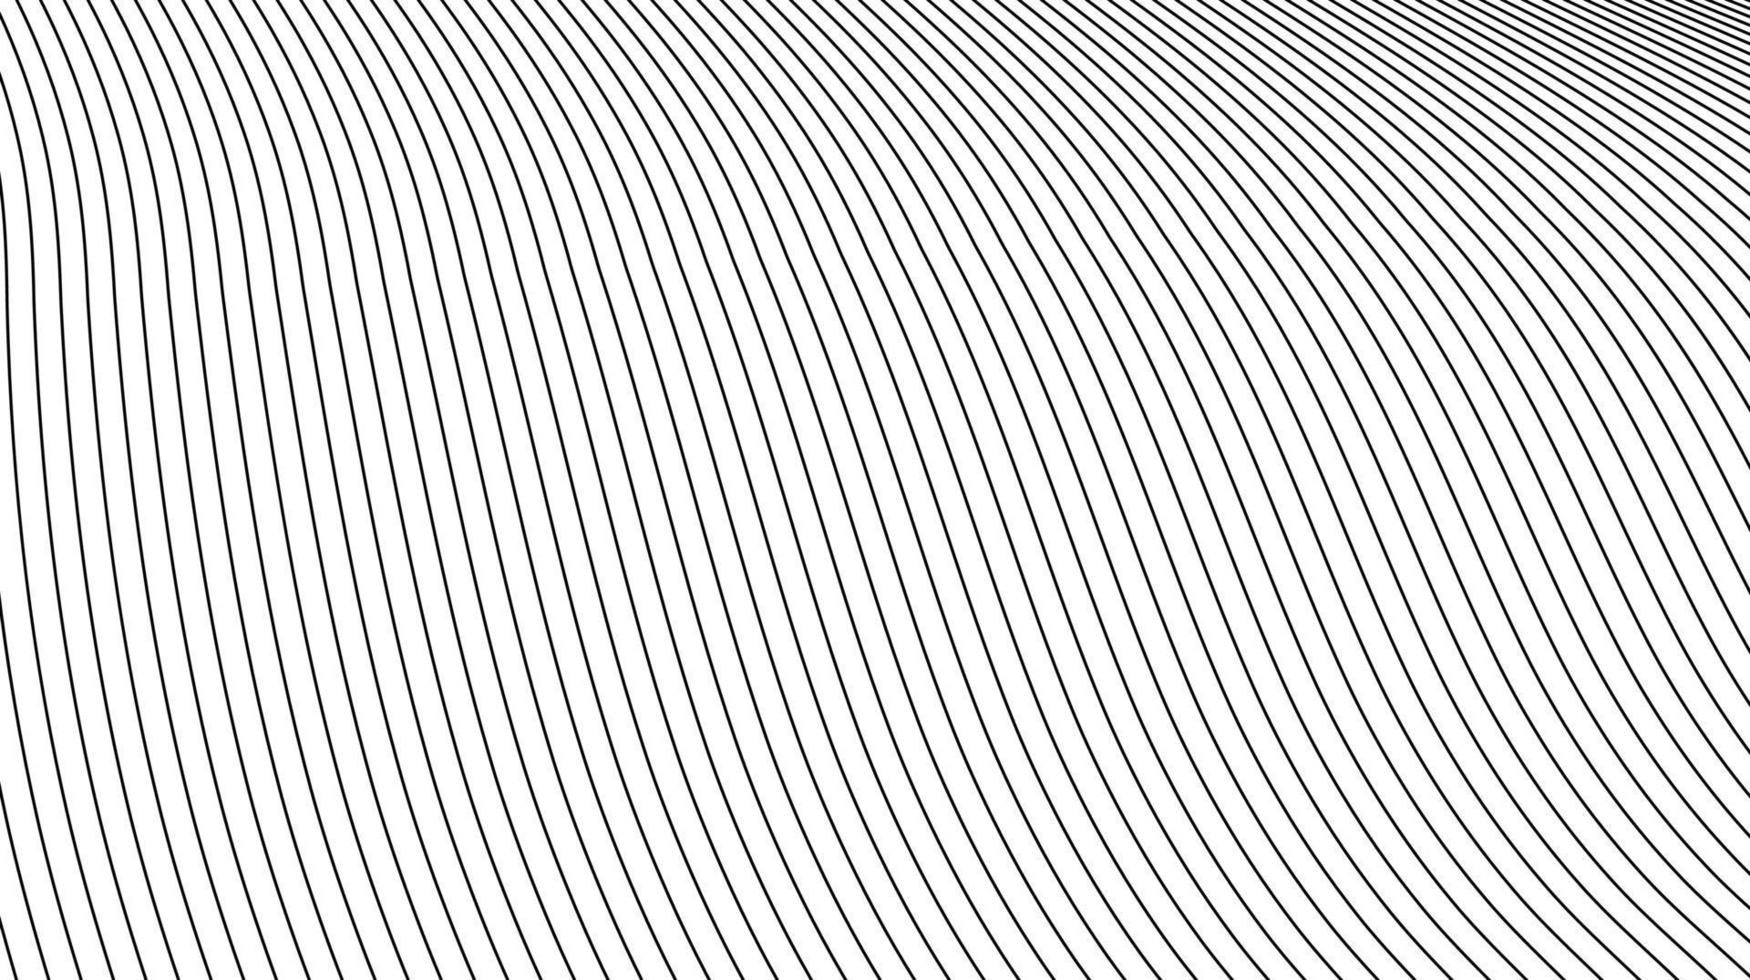 Resumen de líneas topográficas minimalistas simples. patrón de líneas grises sobre fondo blanco vector